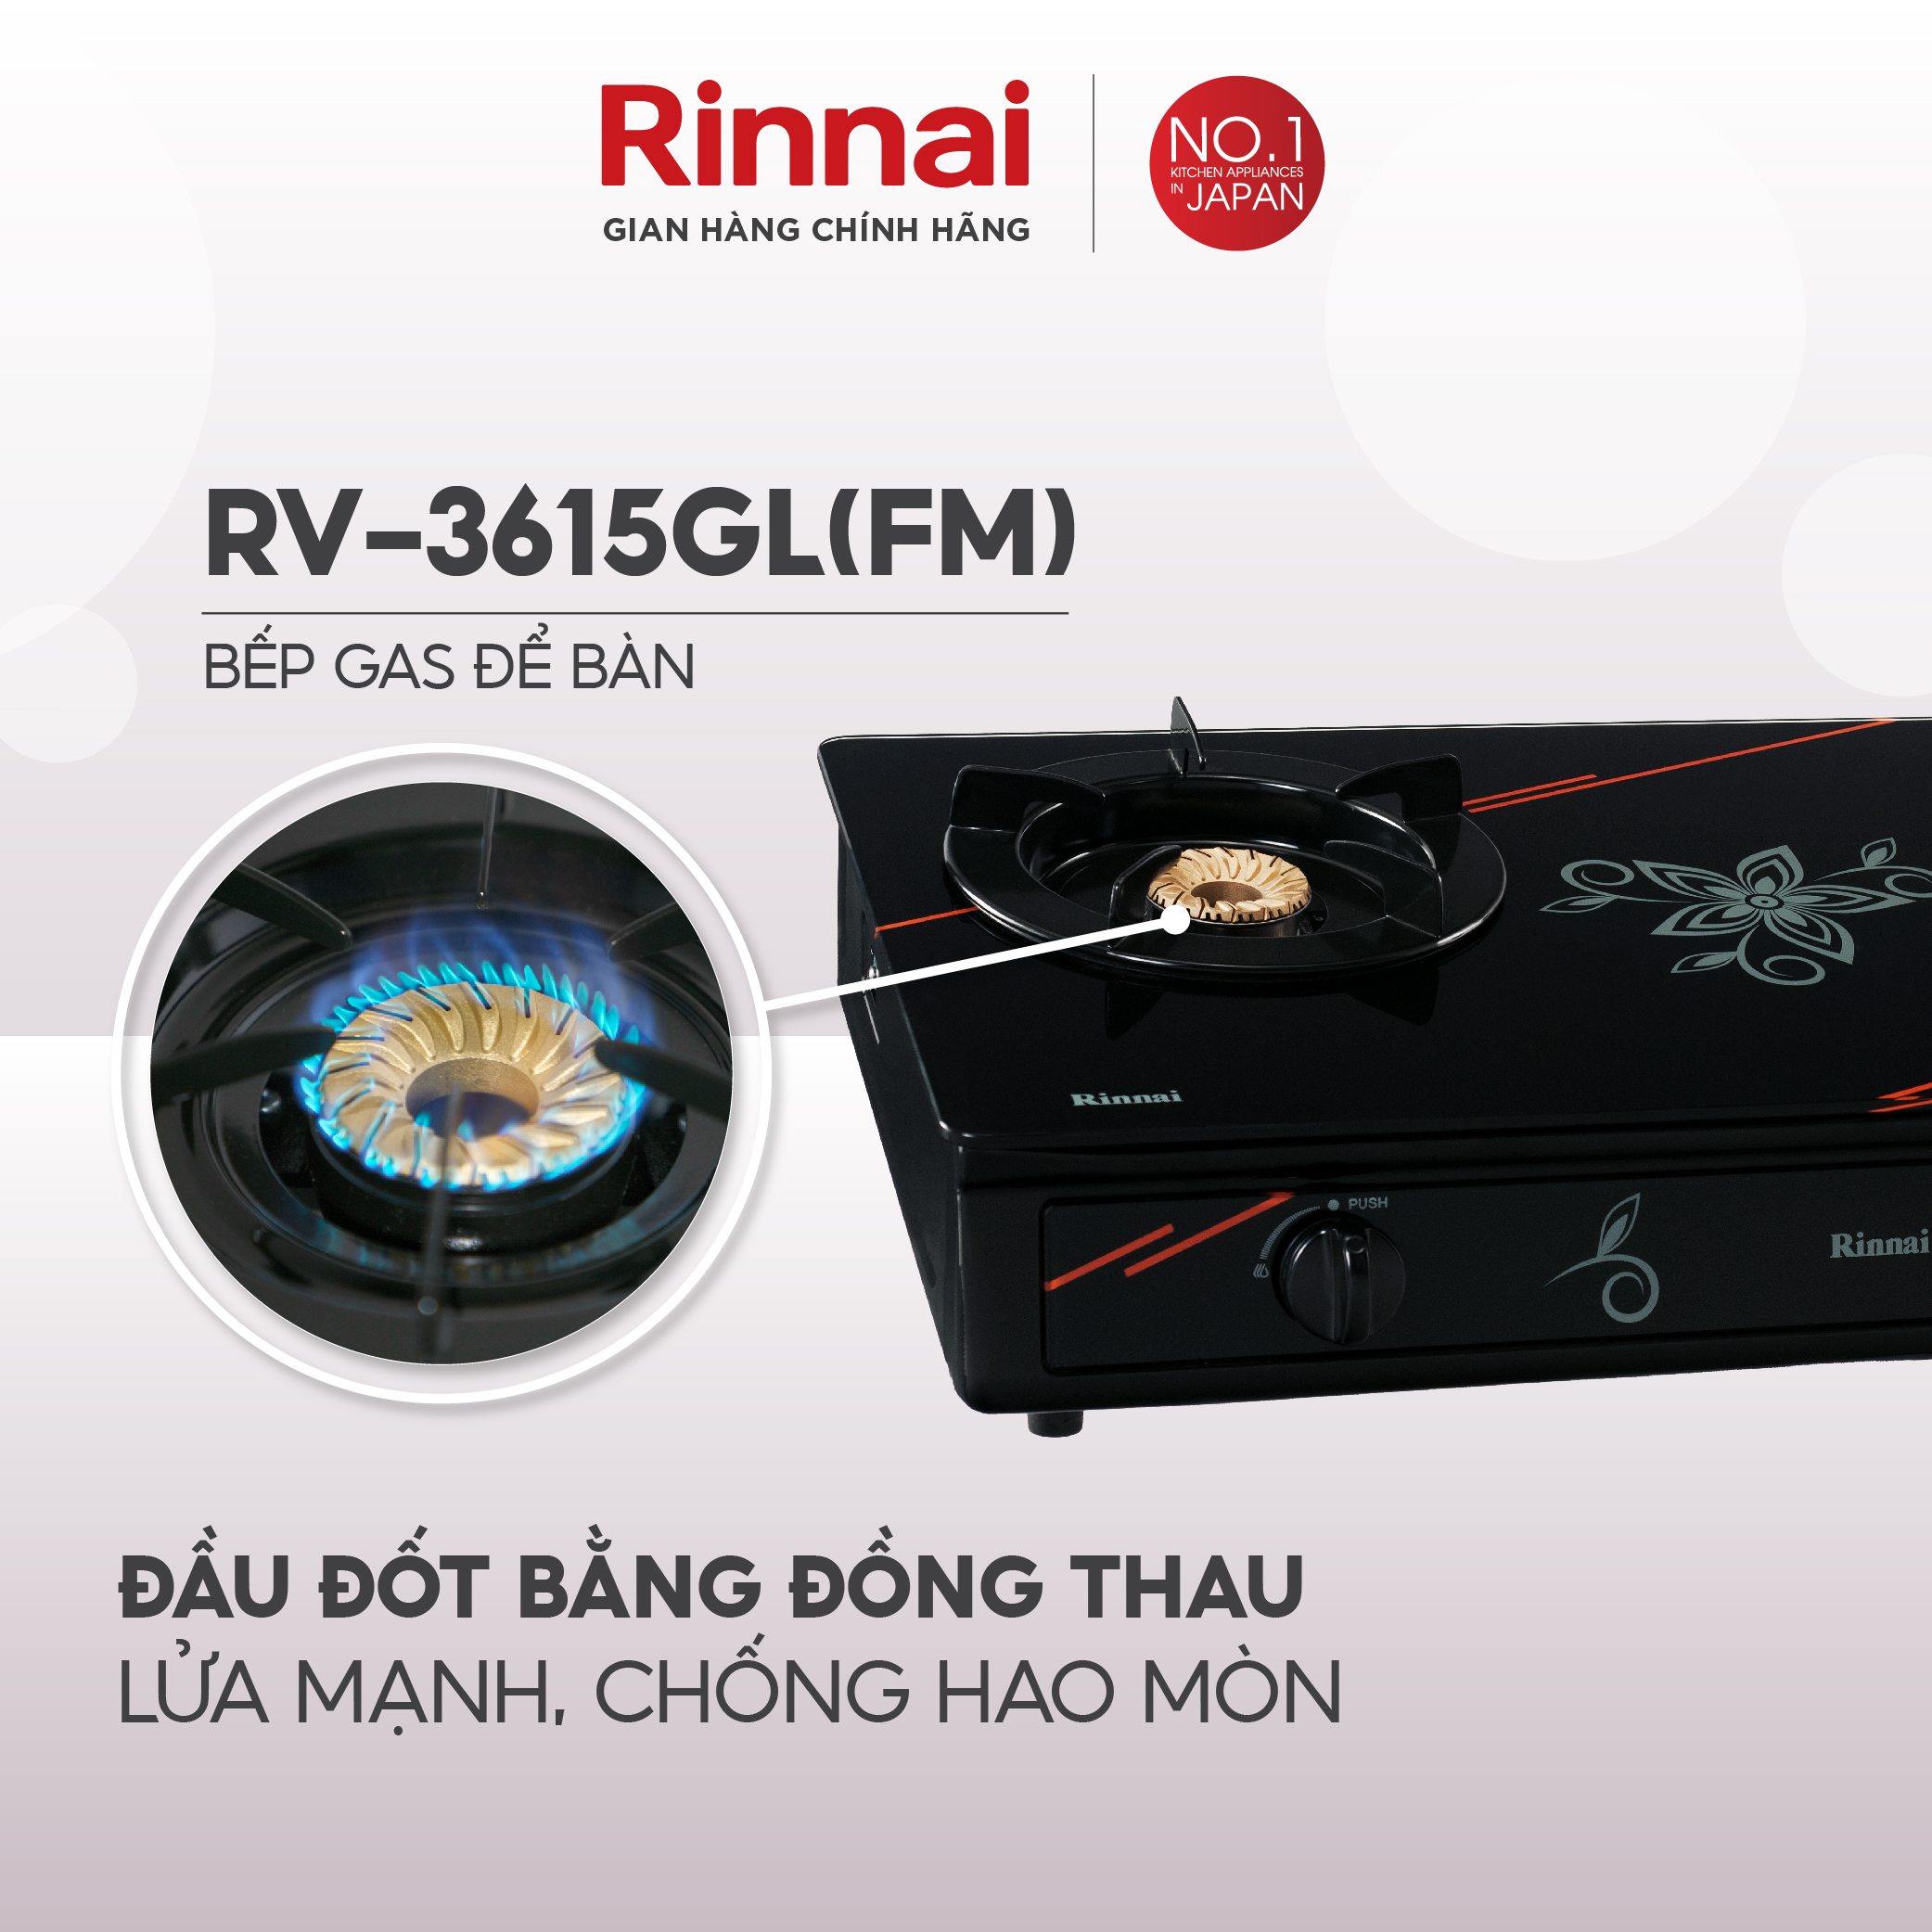 Bếp gas dương Rinnai RV-3615GL(FM) mặt bếp kính và kiềng bếp men - Hàng chính hãng.